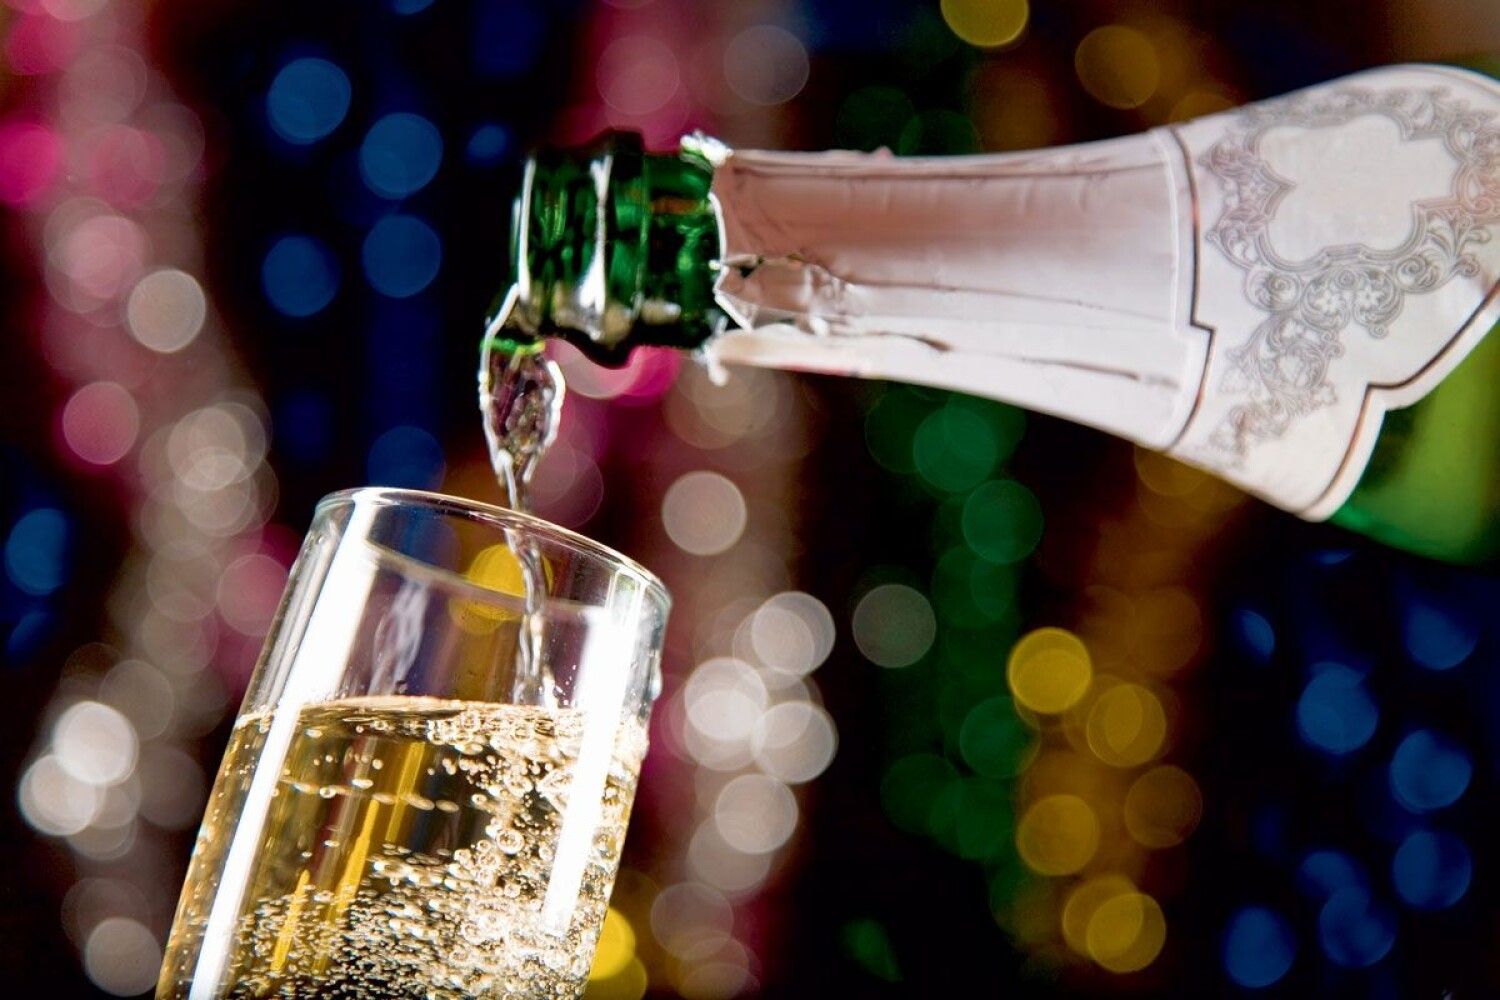 Шампанское открыла слушать. Шампанское в бокале. Шампанское наливают в бокал. Бокалы с шампанским. Шампанское новый год.